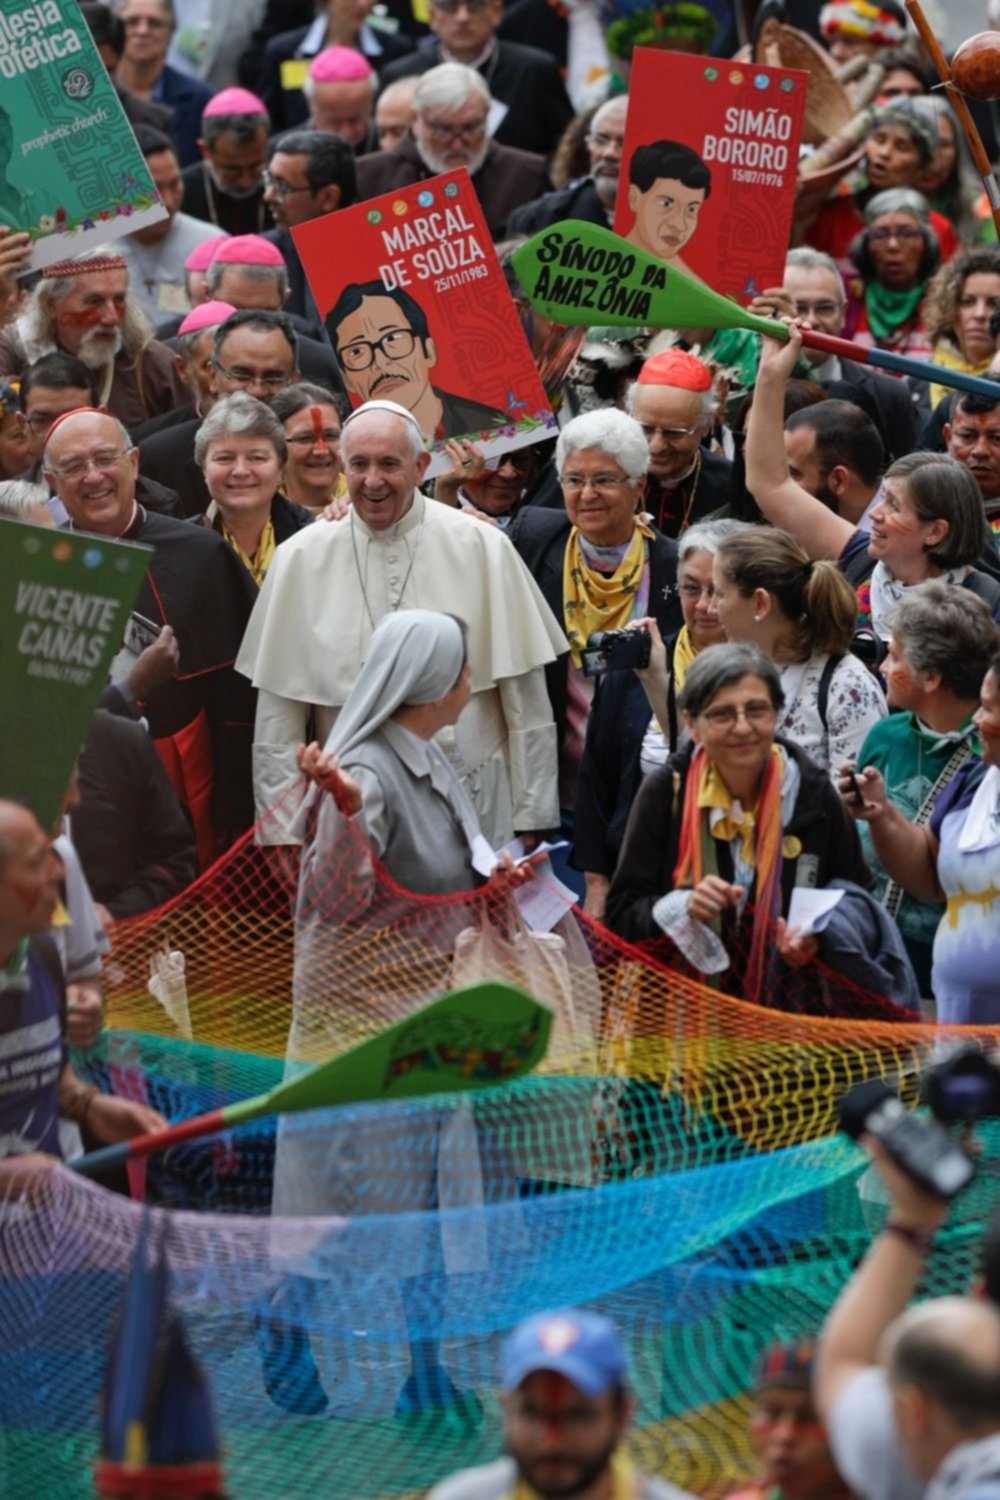 El Papa Francisco criticó el "desprecio de los pueblos" que hay "en mi tierra" 